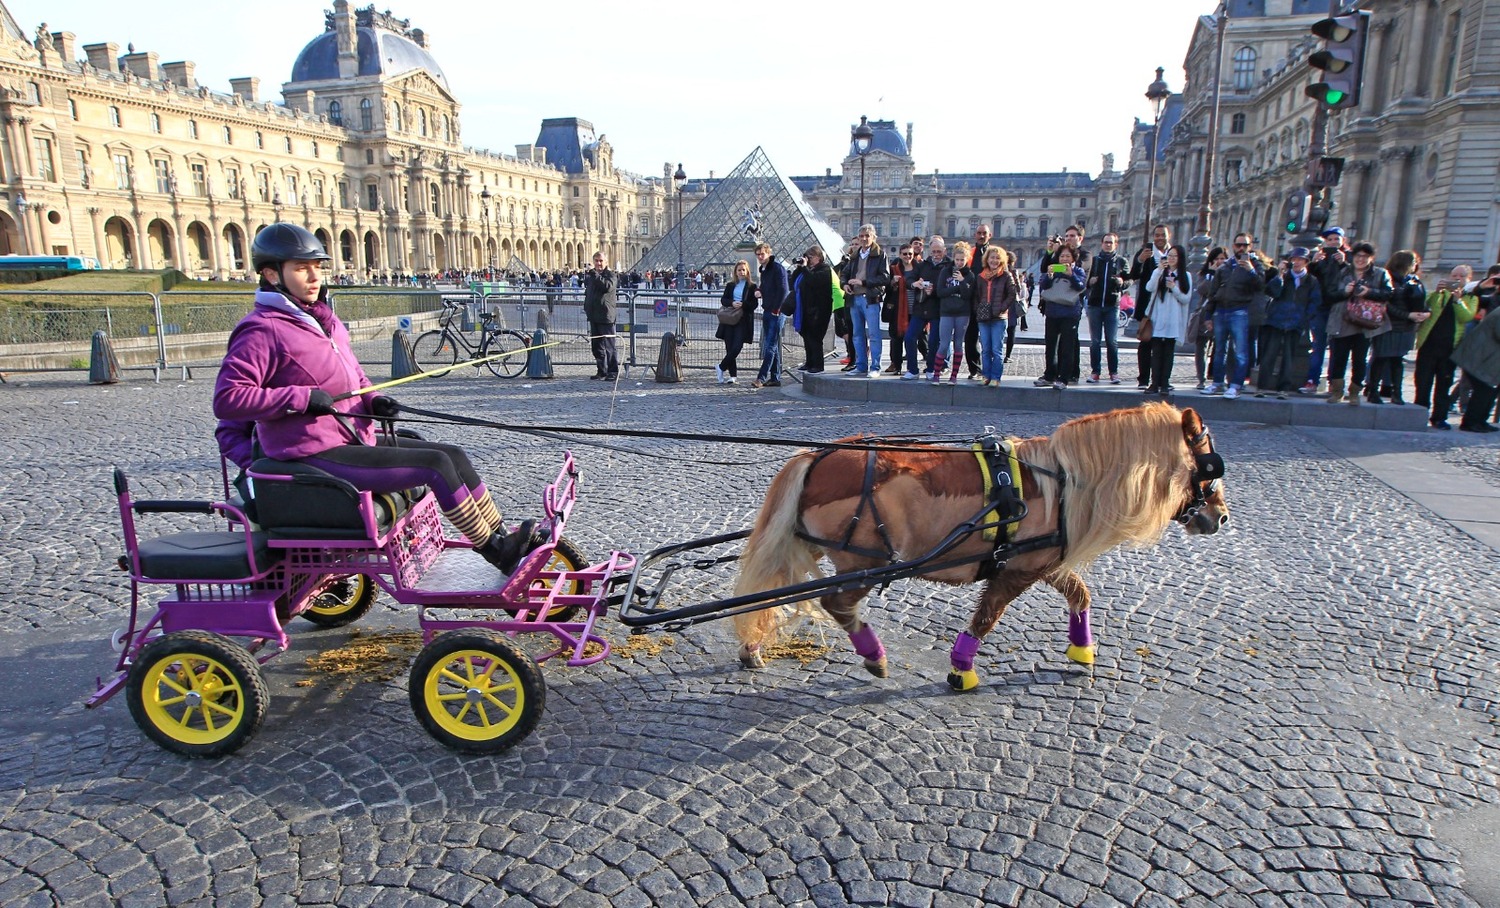 Παρίσι: Απαγορεύτηκαν οι βόλτες με πόνι μετά από εκστρατεία για τα δικαιώματα των ζώων